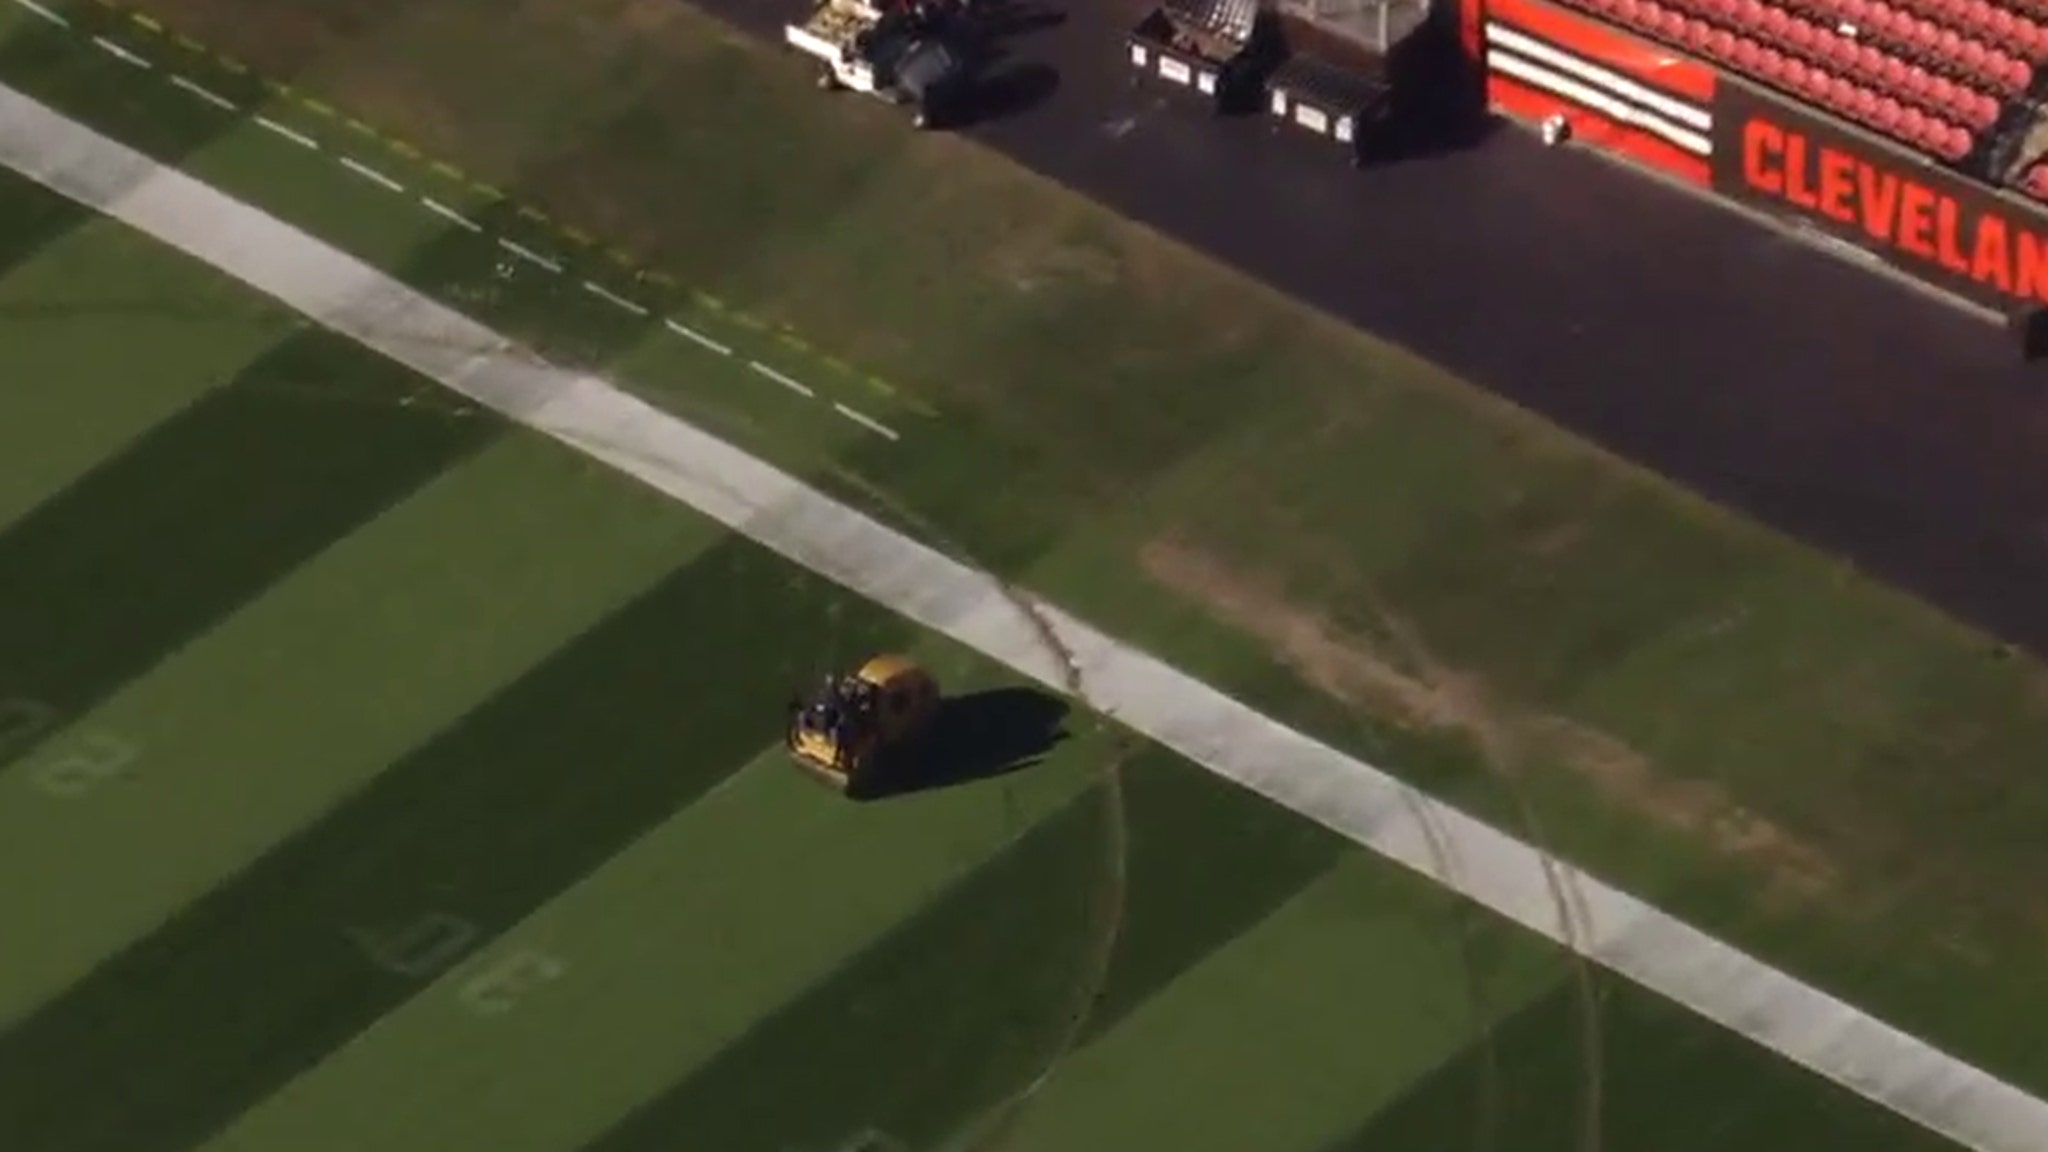 Cleveland Browns Stadium Field Wrecked After Alleged Joyrider Break-In